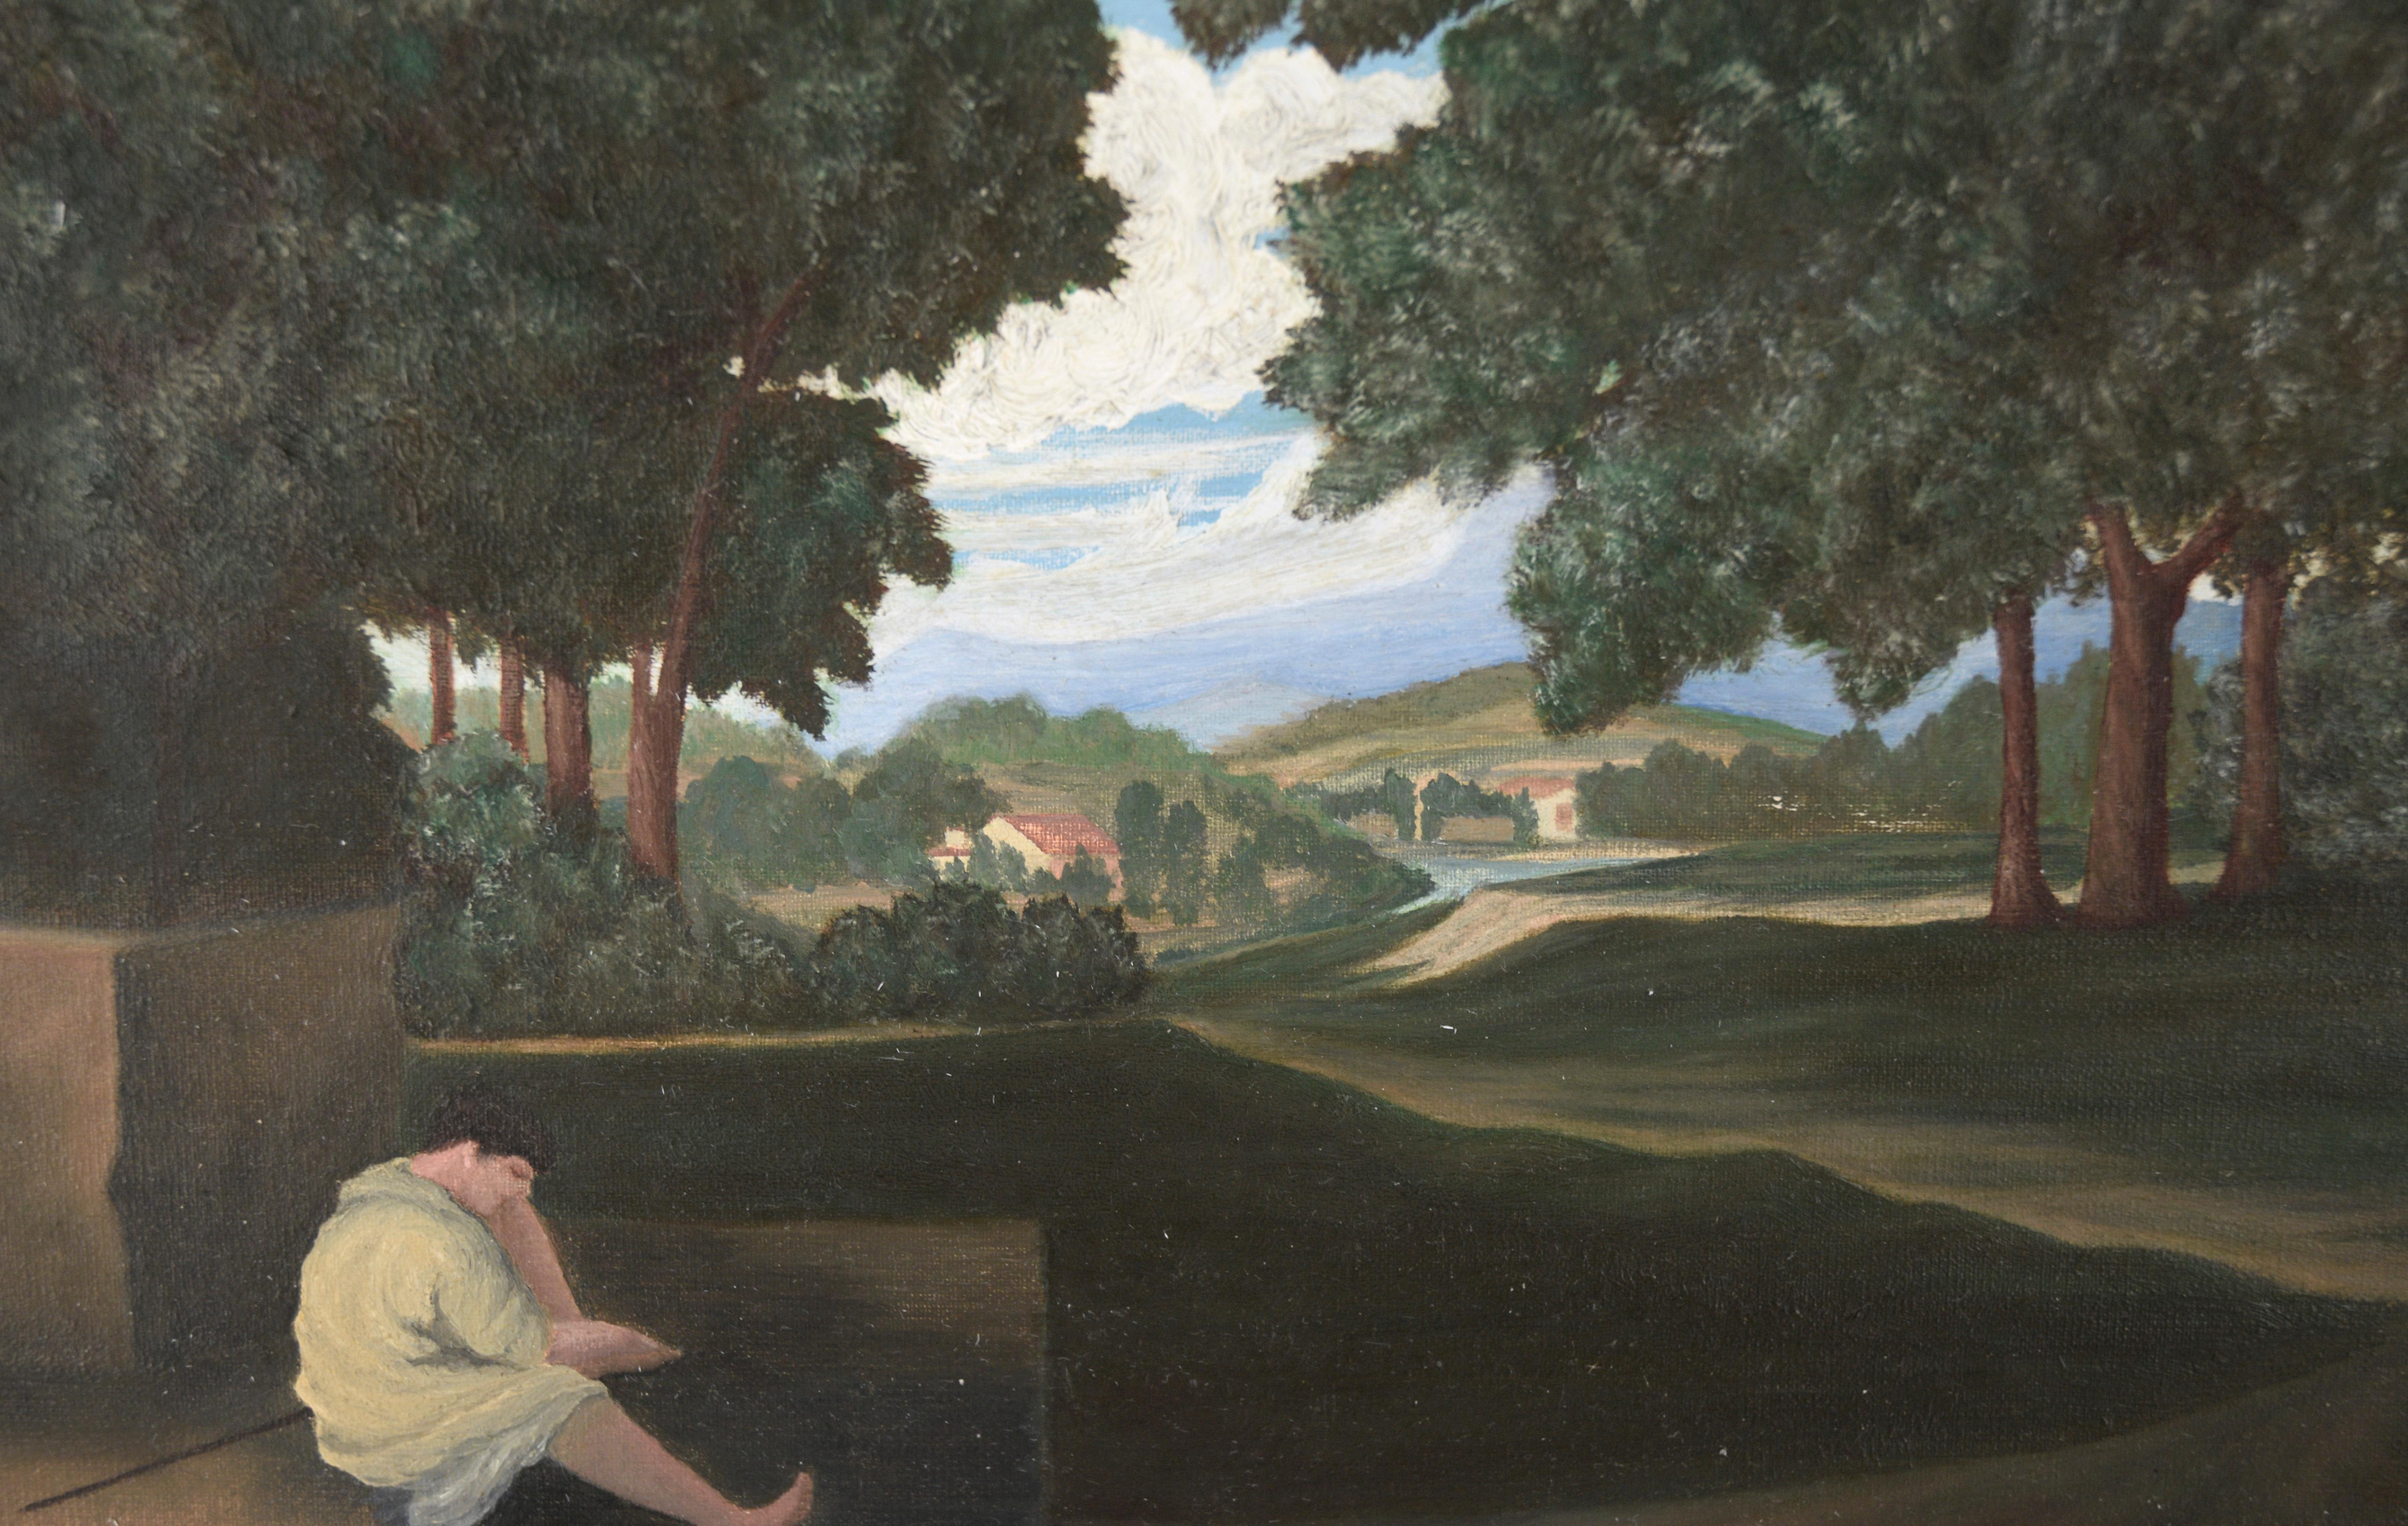 Étude du paysage de Nicolas Poussin avec un homme se lavant les pieds à l'huile sur carton+.

Étude à petite échelle de la célèbre œuvre de Poussin par un artiste inconnu (début du 20e siècle). Un homme est assis à gauche de la composition - dans